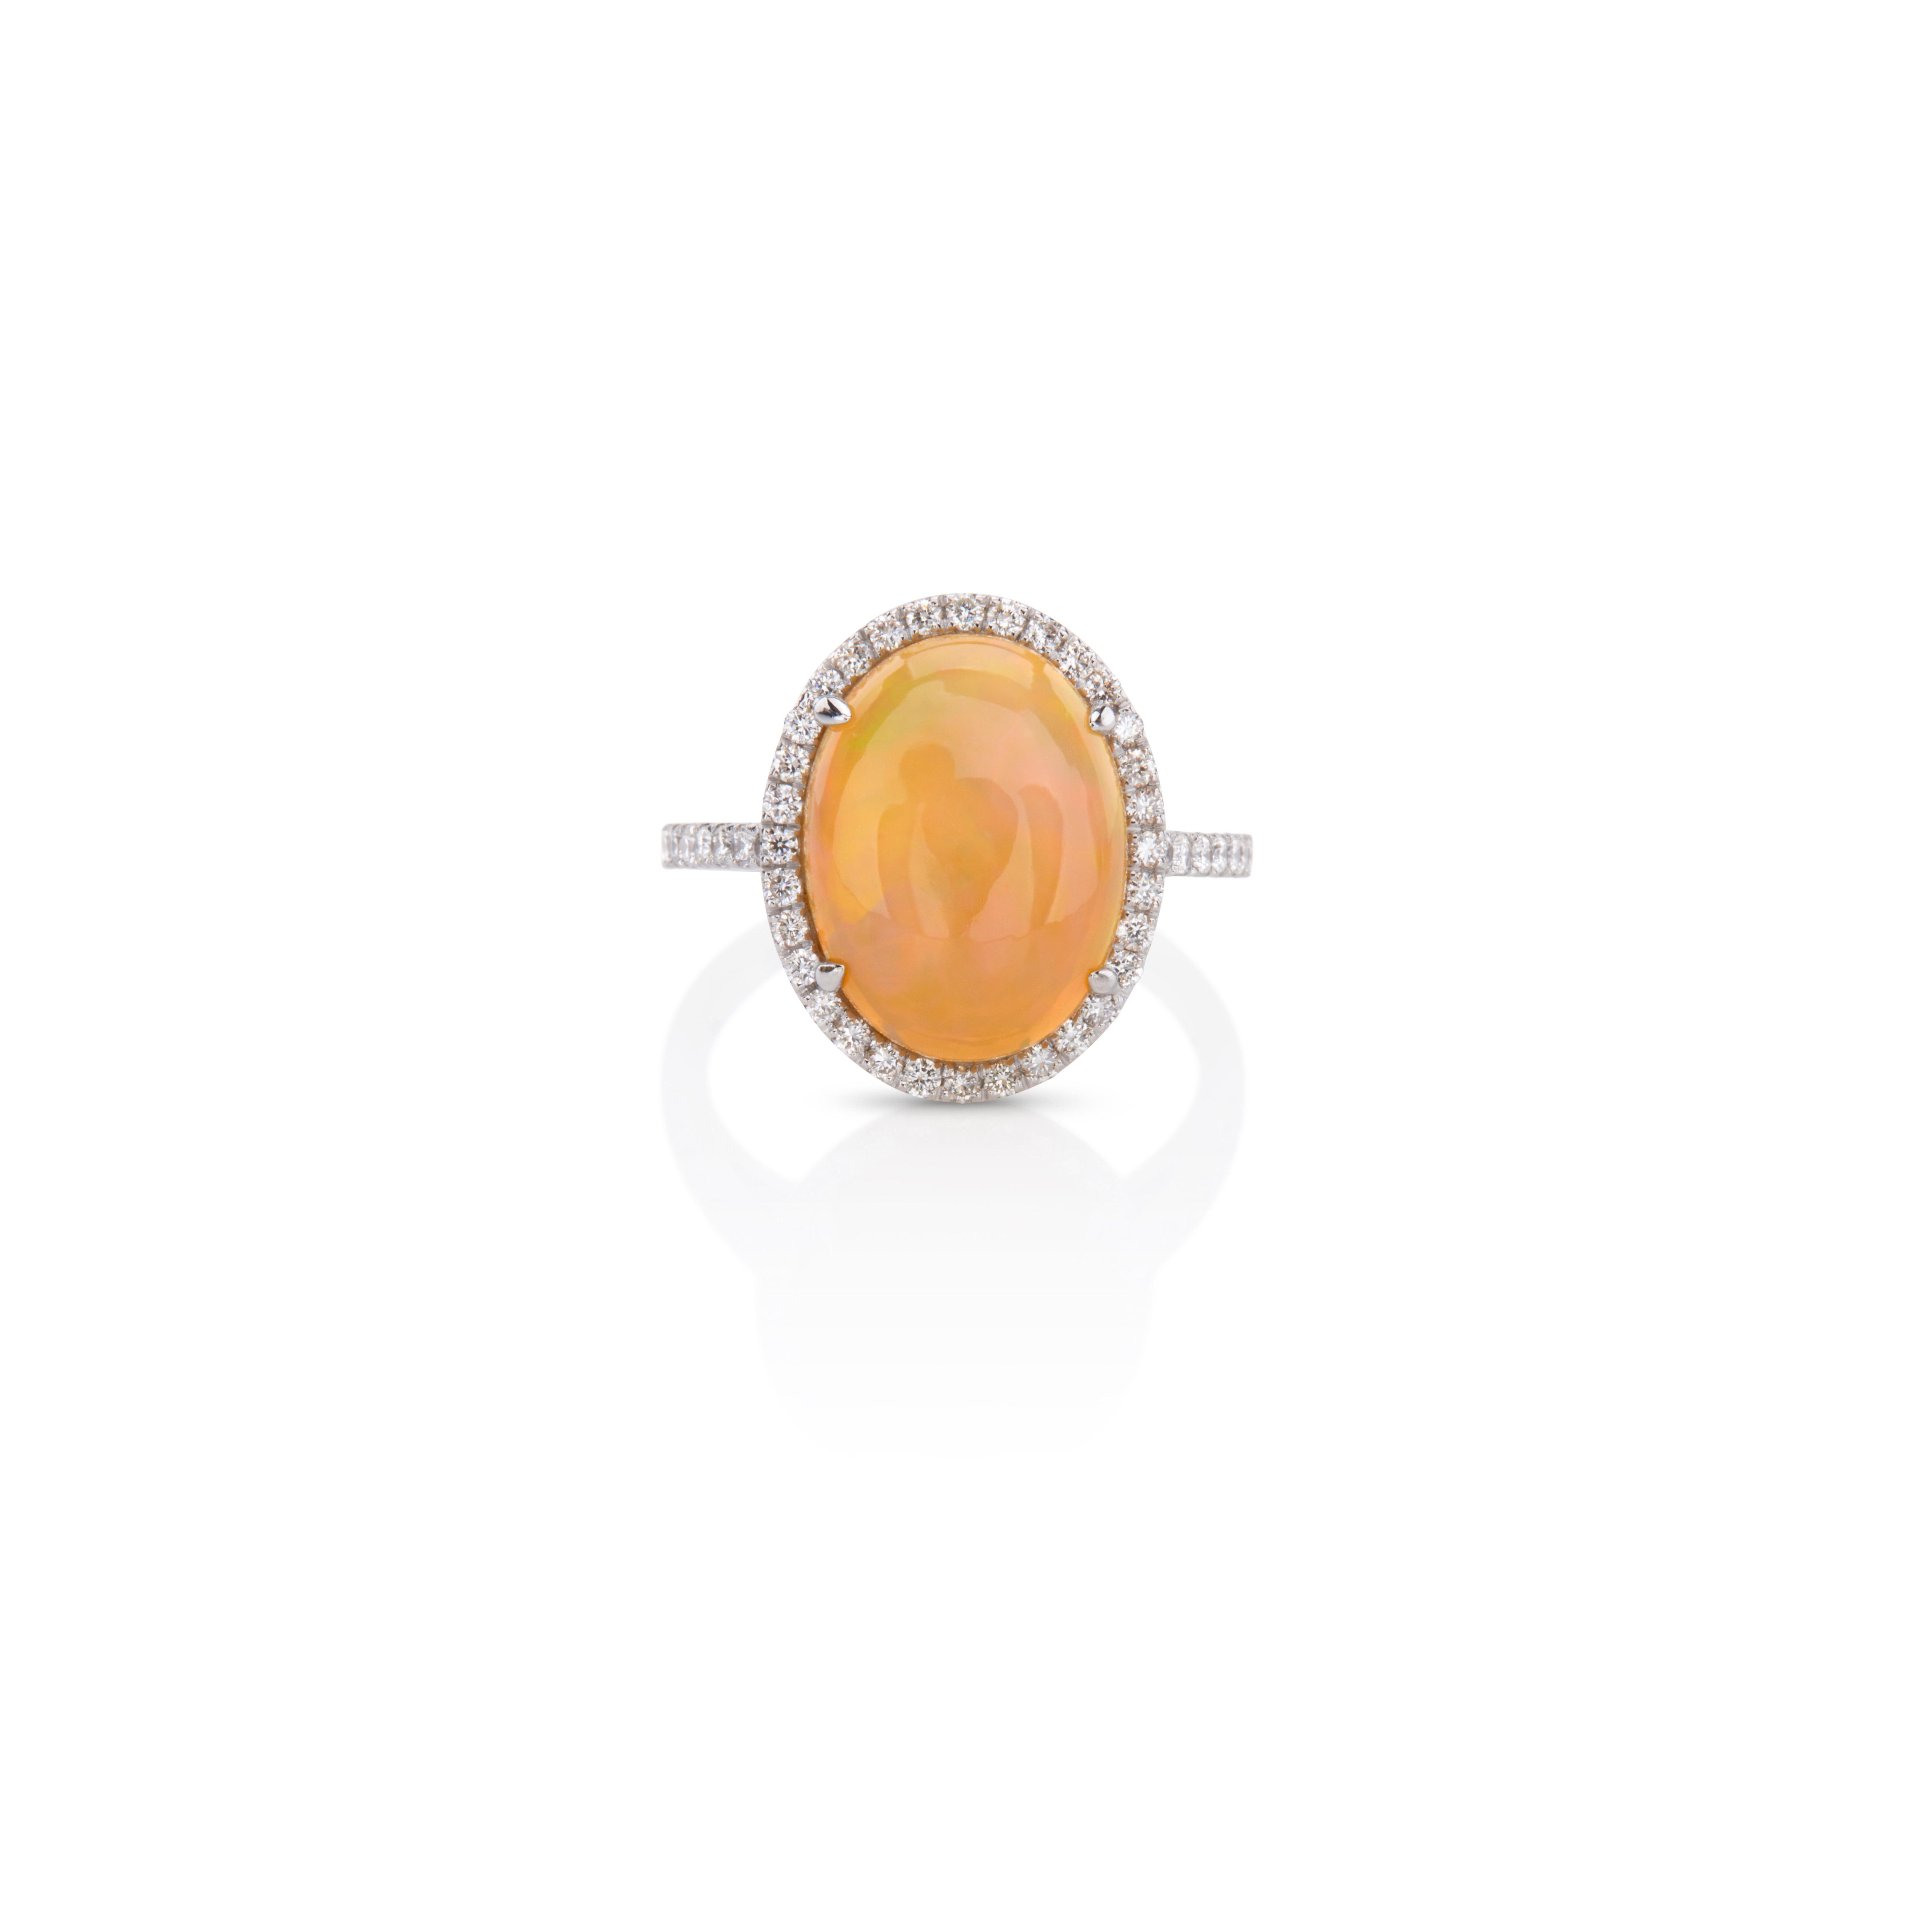 Cluster-Ring mit 3,20 ct ovalem Opal in der Mitte, umgeben von 0,32 ct Diamanten im Brillantschliff, handgefertigt in 18 Kt Weißgold.
Ein Halo aus Pavé-Diamanten erhellt diesen Ring und verleiht dem Design ein auffallendes Strahlen, während der Opal